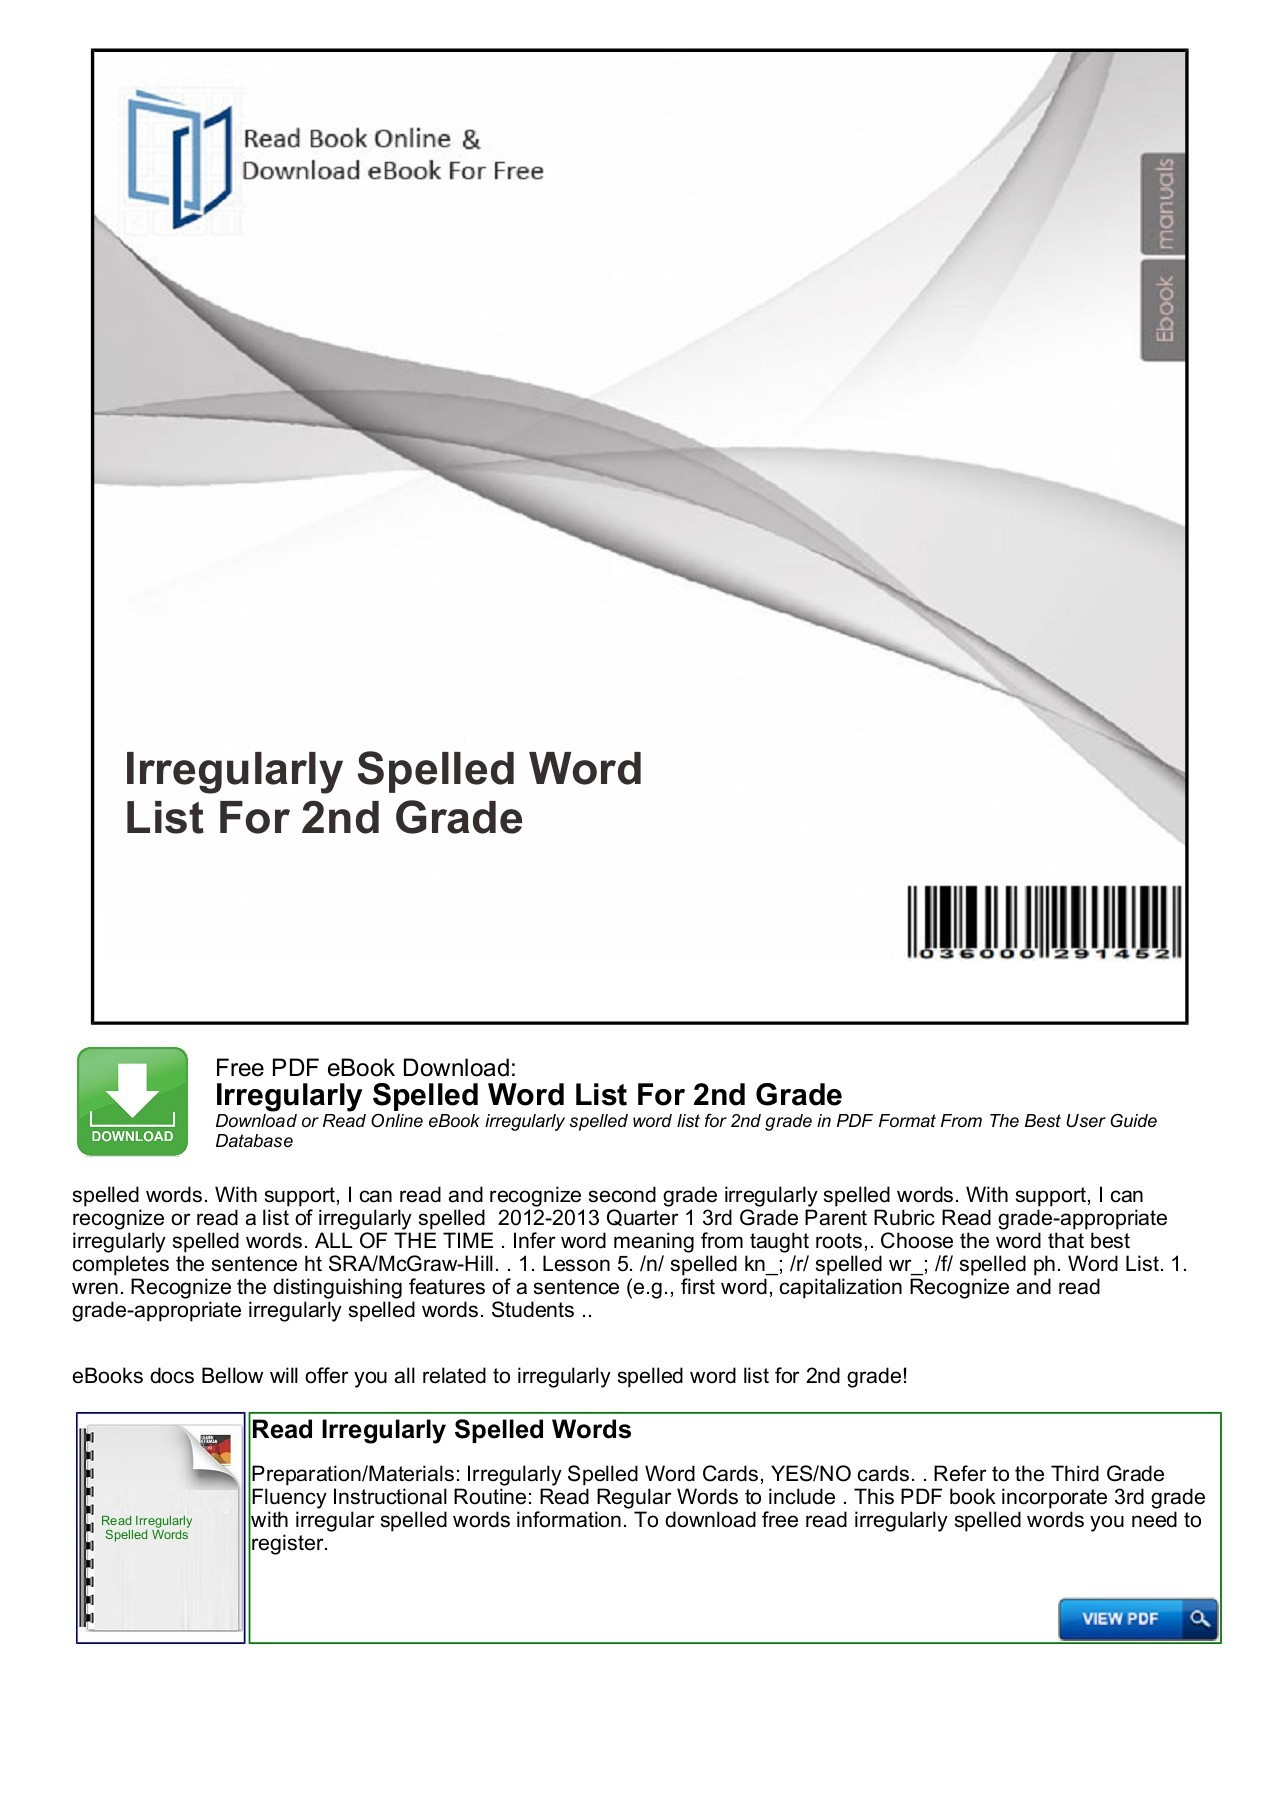 Irregularly Spelled Words 2nd Grade Irregularly Spelled Word List for 2nd Grade Pages 1 7